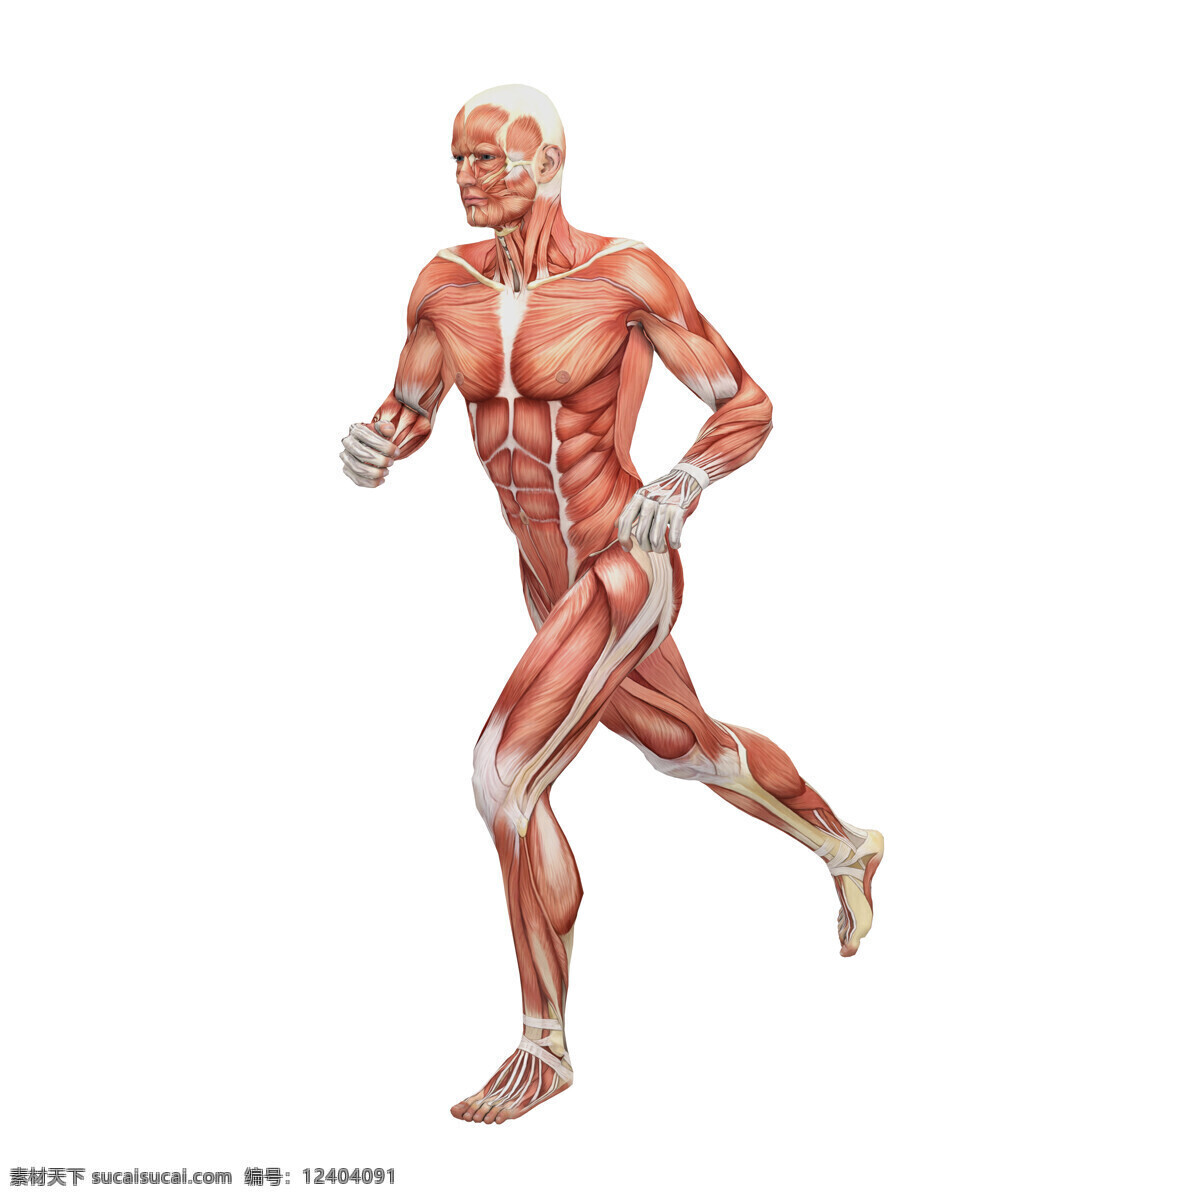 男性人体 人体肌肉 肌肉 人体结构 人体解刨 西医 医院 人体构造 皮下肌肉 医学 人体工学 女性肌肉 女性器官 肌肉分布 肌肉结构 人体研究 生命科技 立体人体 三维人体 人物图库 其他人物